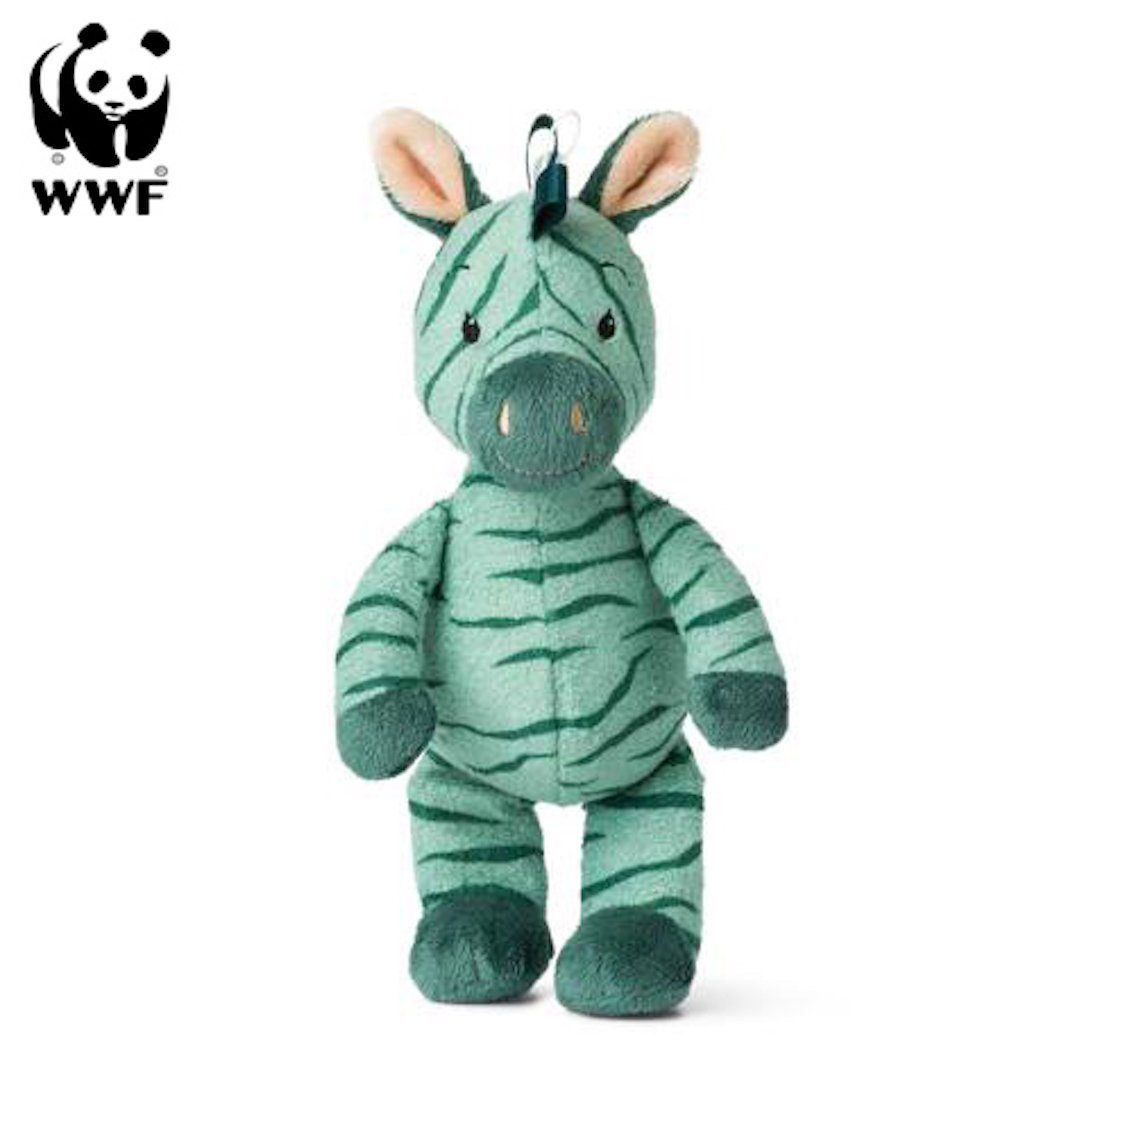 WWF Cub Club grün, 22cm Glöckchen Kuscheltier Kleinkinder Ziko das Zebra 